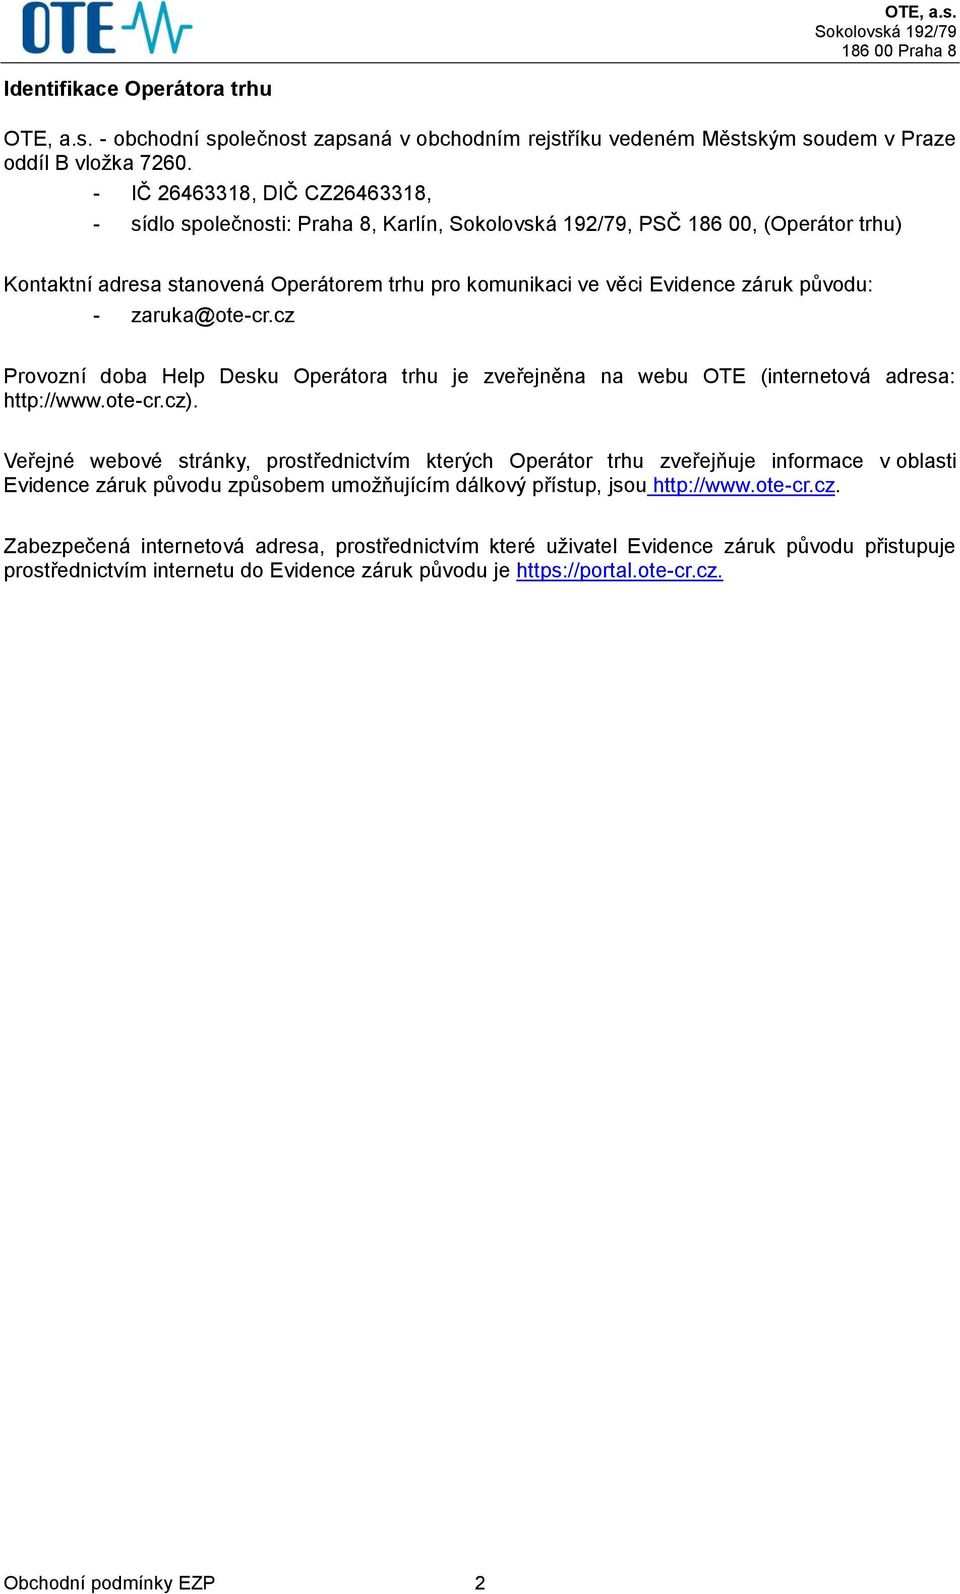 zaruka@ote-cr.cz Provozní doba Help Desku Operátora trhu je zveřejněna na webu OTE (internetová adresa: http://www.ote-cr.cz).